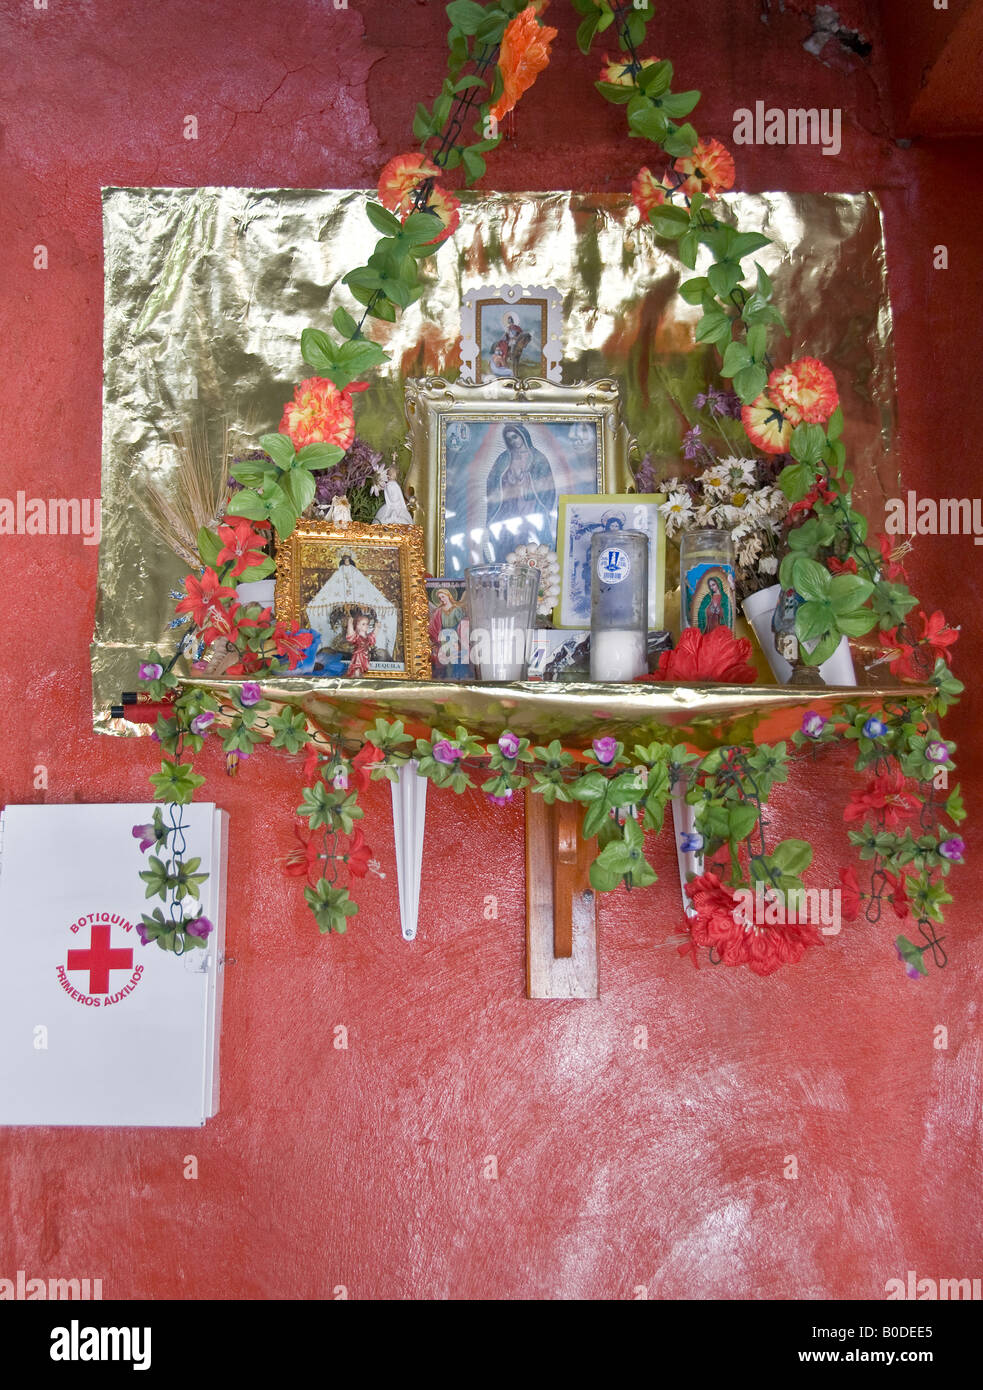 Gerahmte Bilder und Ikonen der Jungfrau von Guadalupe auf Regal Schrein gelegt. Mit Kerzen, Lichterketten und Plastikblumen. Stockfoto